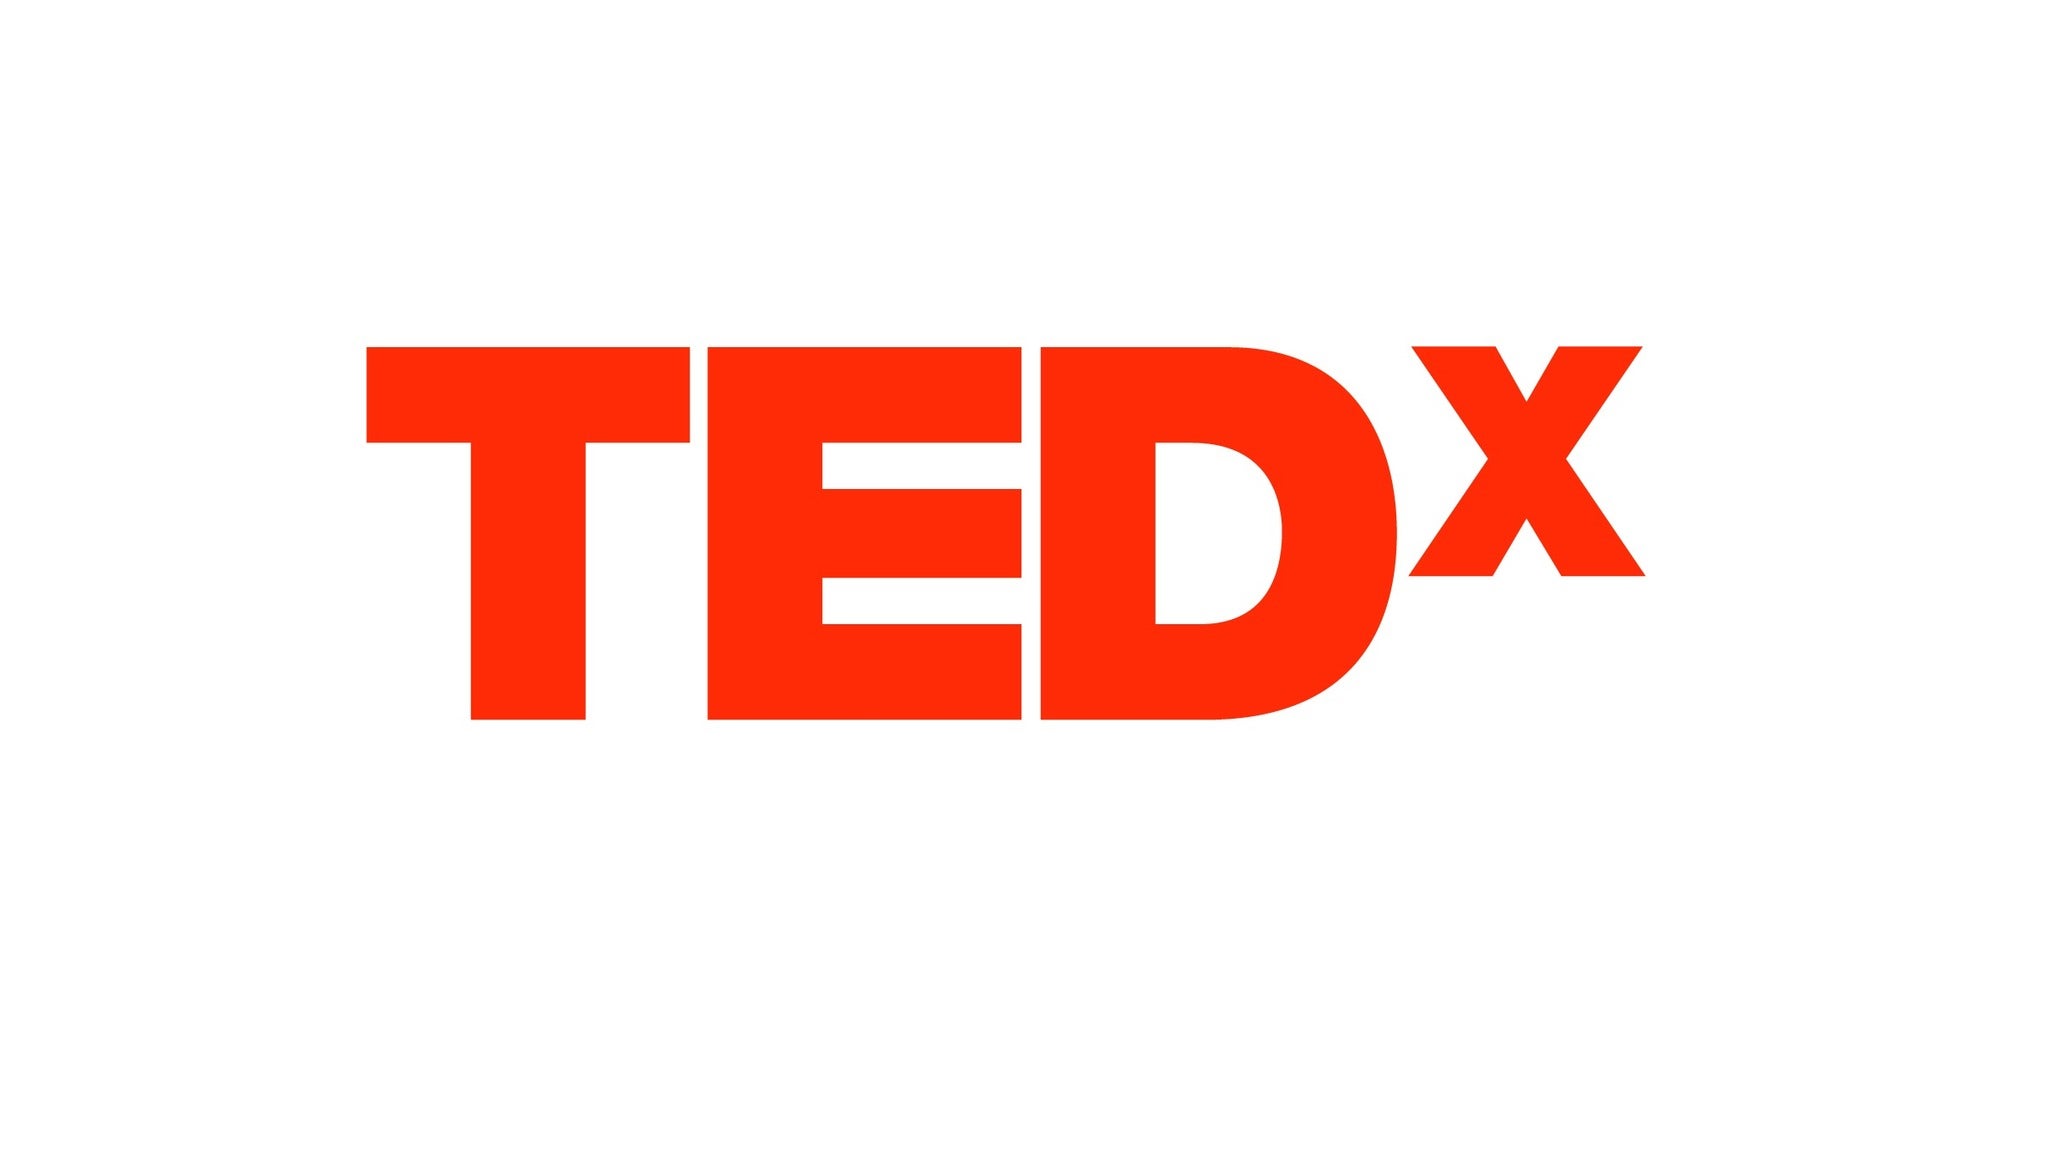 TEDxCambridge in Boston promo photo for Exclusive presale offer code